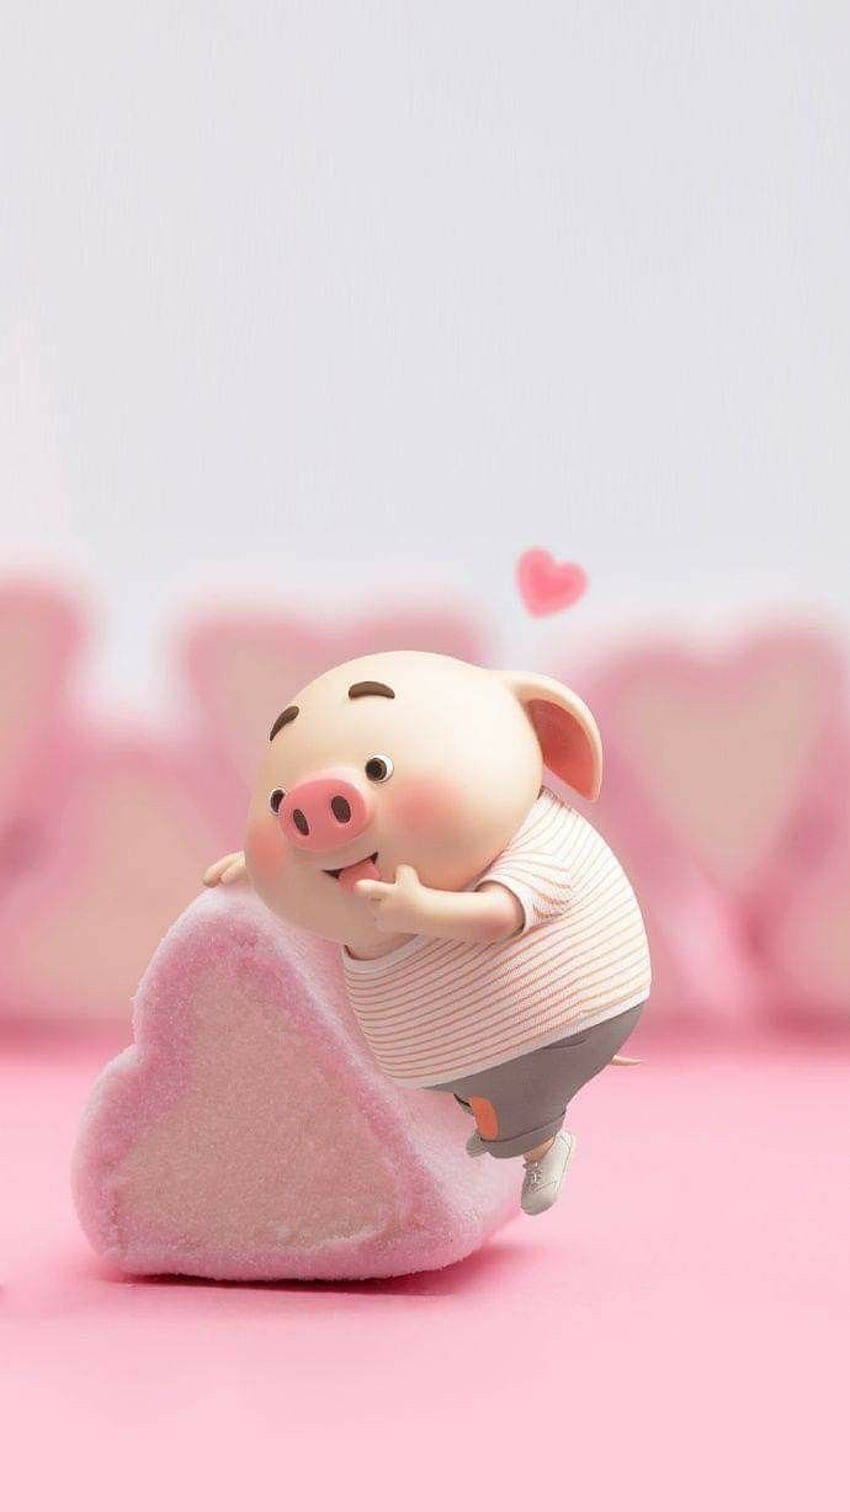 Tải 99+ hình nền cute chất siêu dễ thương về trang hoàng cho máy | Lợn con,  Lợn, Hình nền